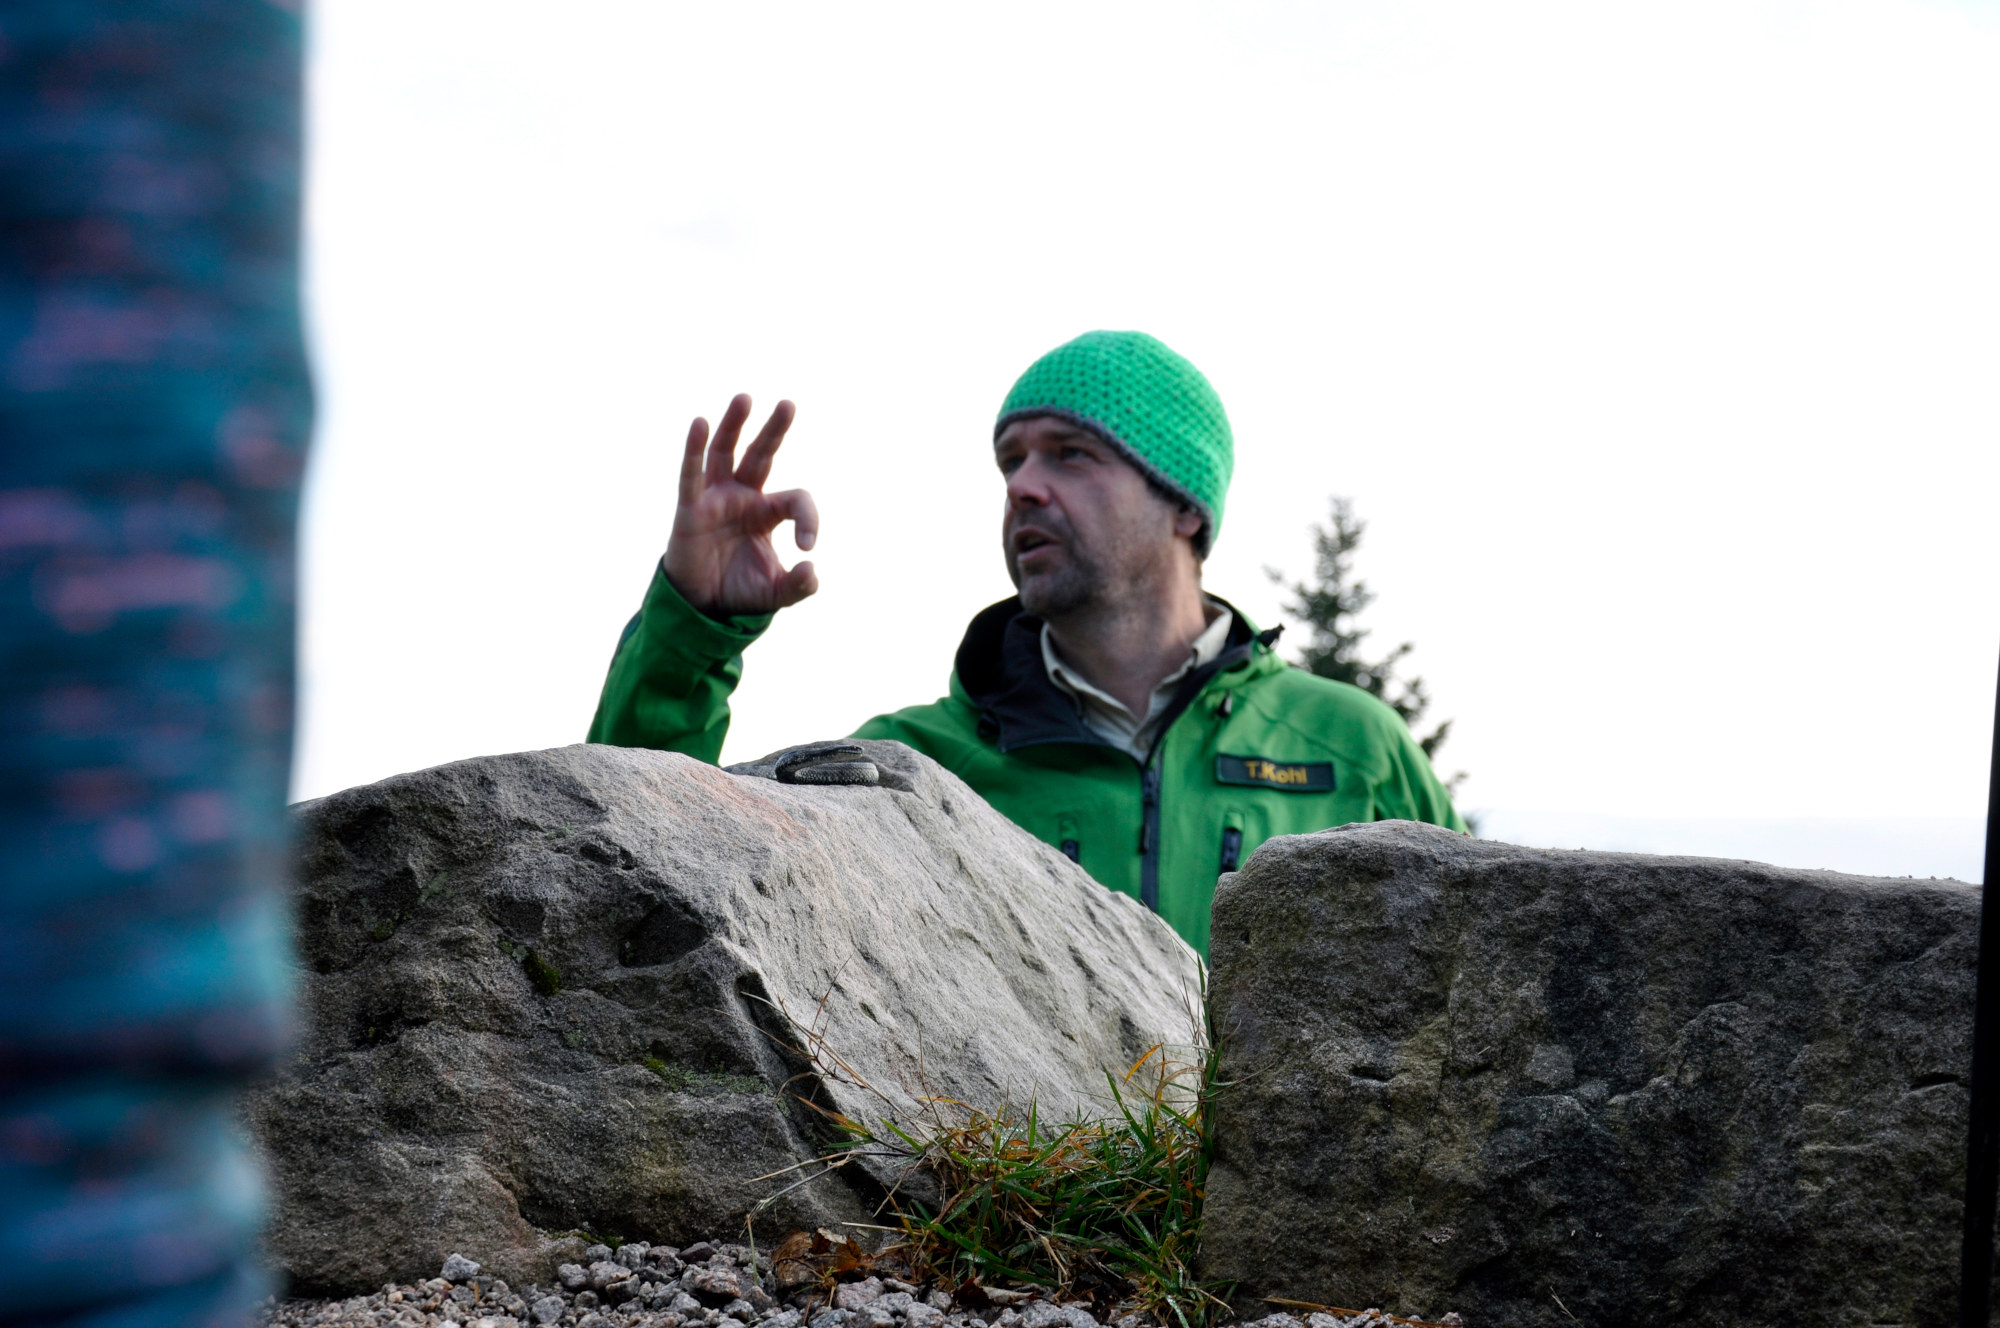 Im Vordergrund sind große Steinblöcke, dahinter steht ein Ranger in grüner Outdoorkleidung und bunt gehäkelter Mütze und zeigt mit seiner rechten Hand eine Art OK-Symbol an.